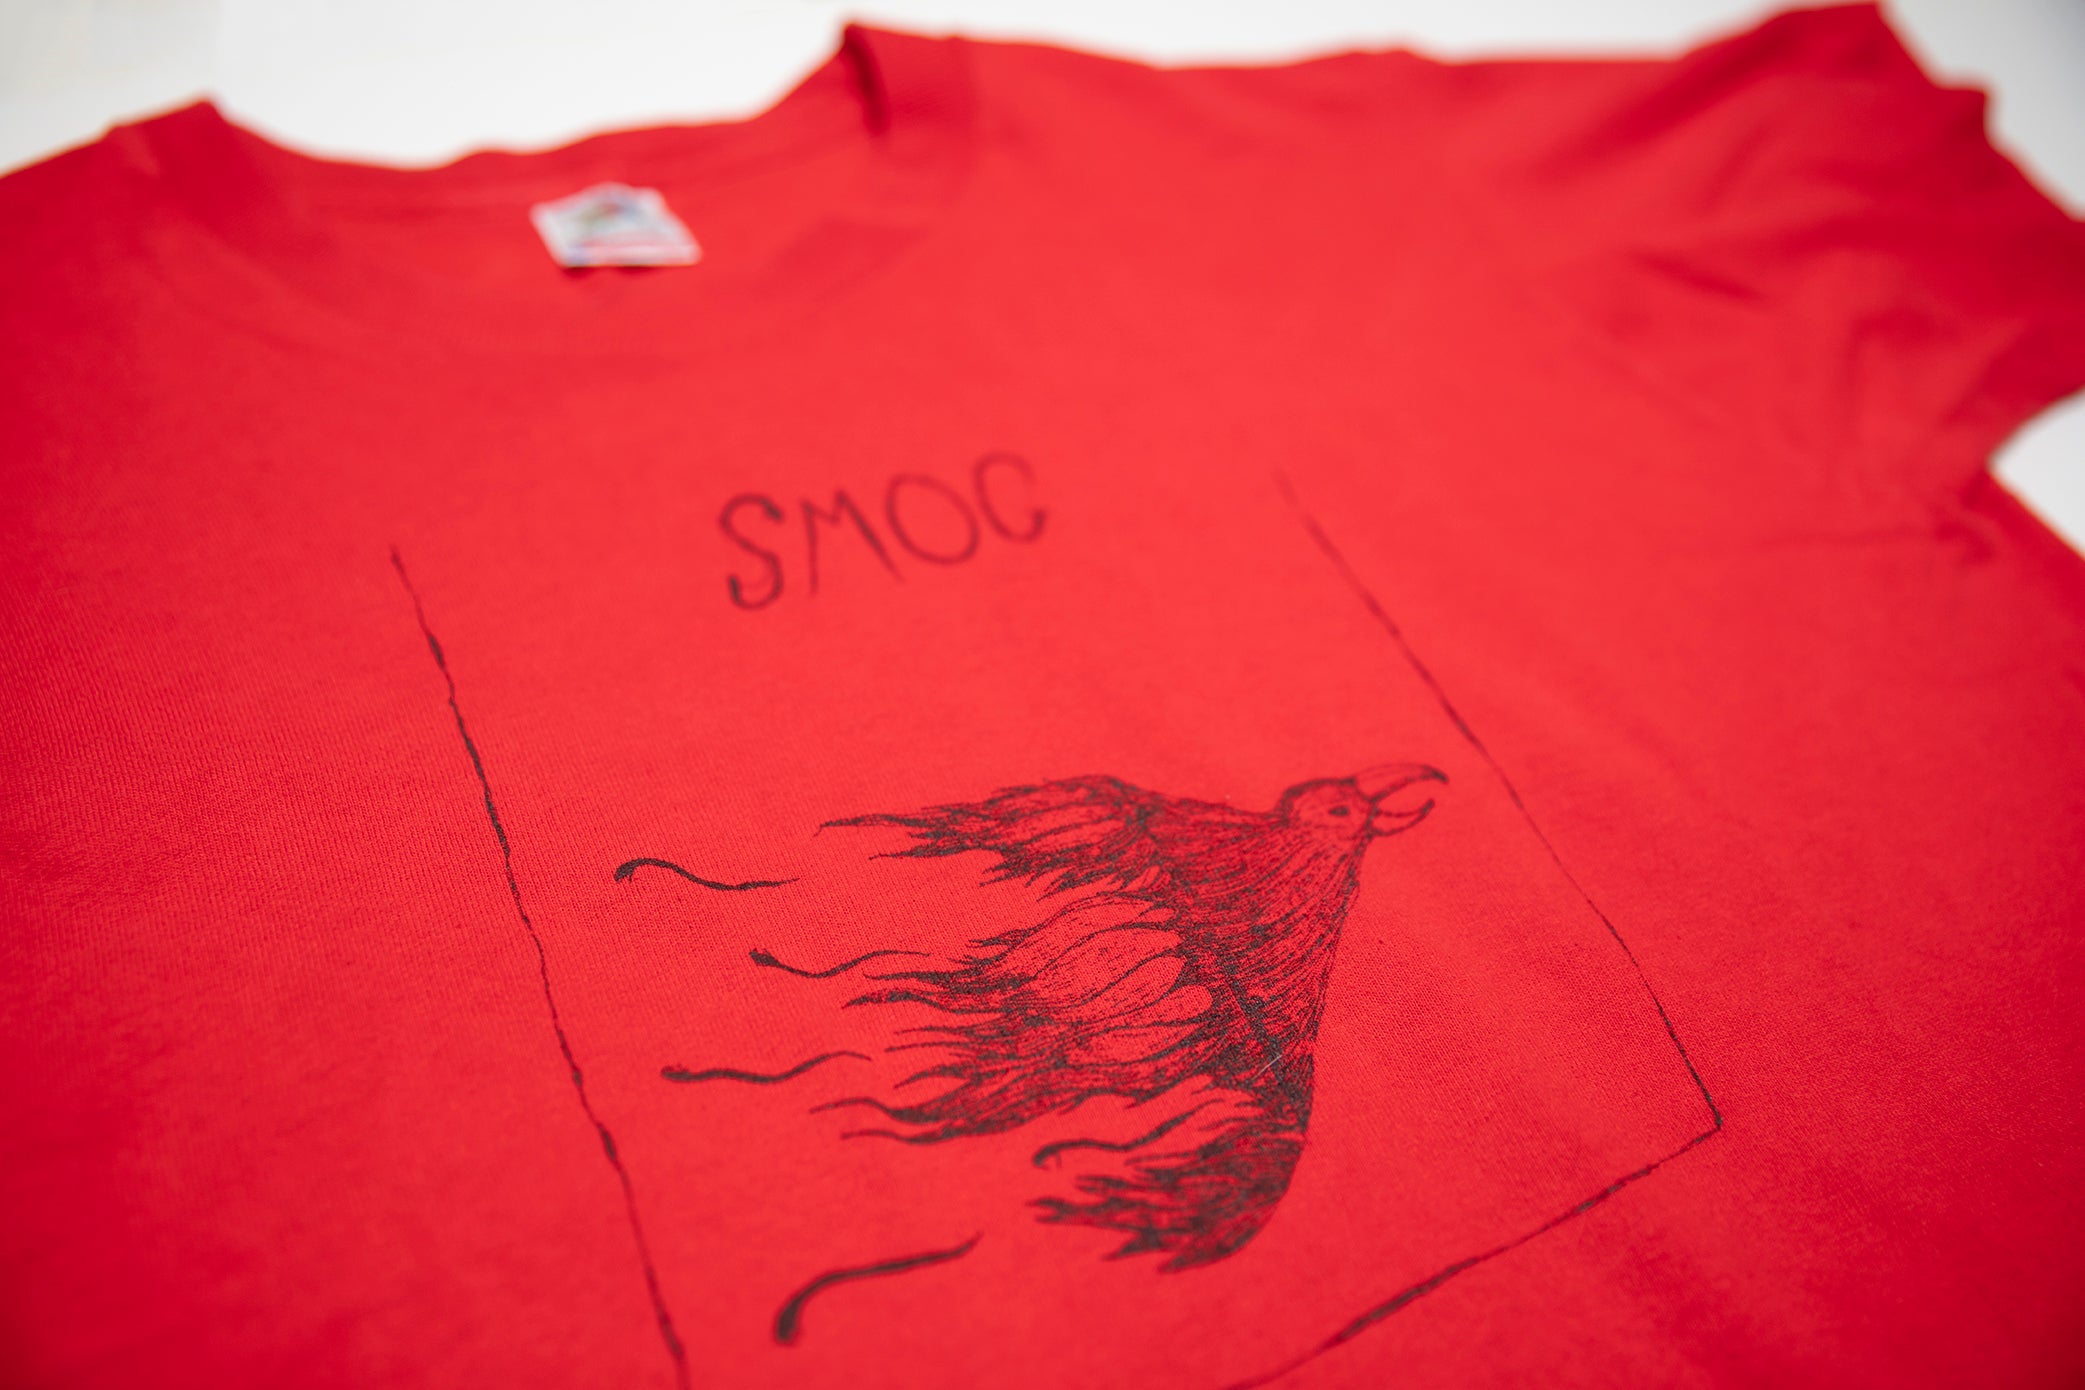 Smog - Bird Logo 90's Tour Shirt Size Medium